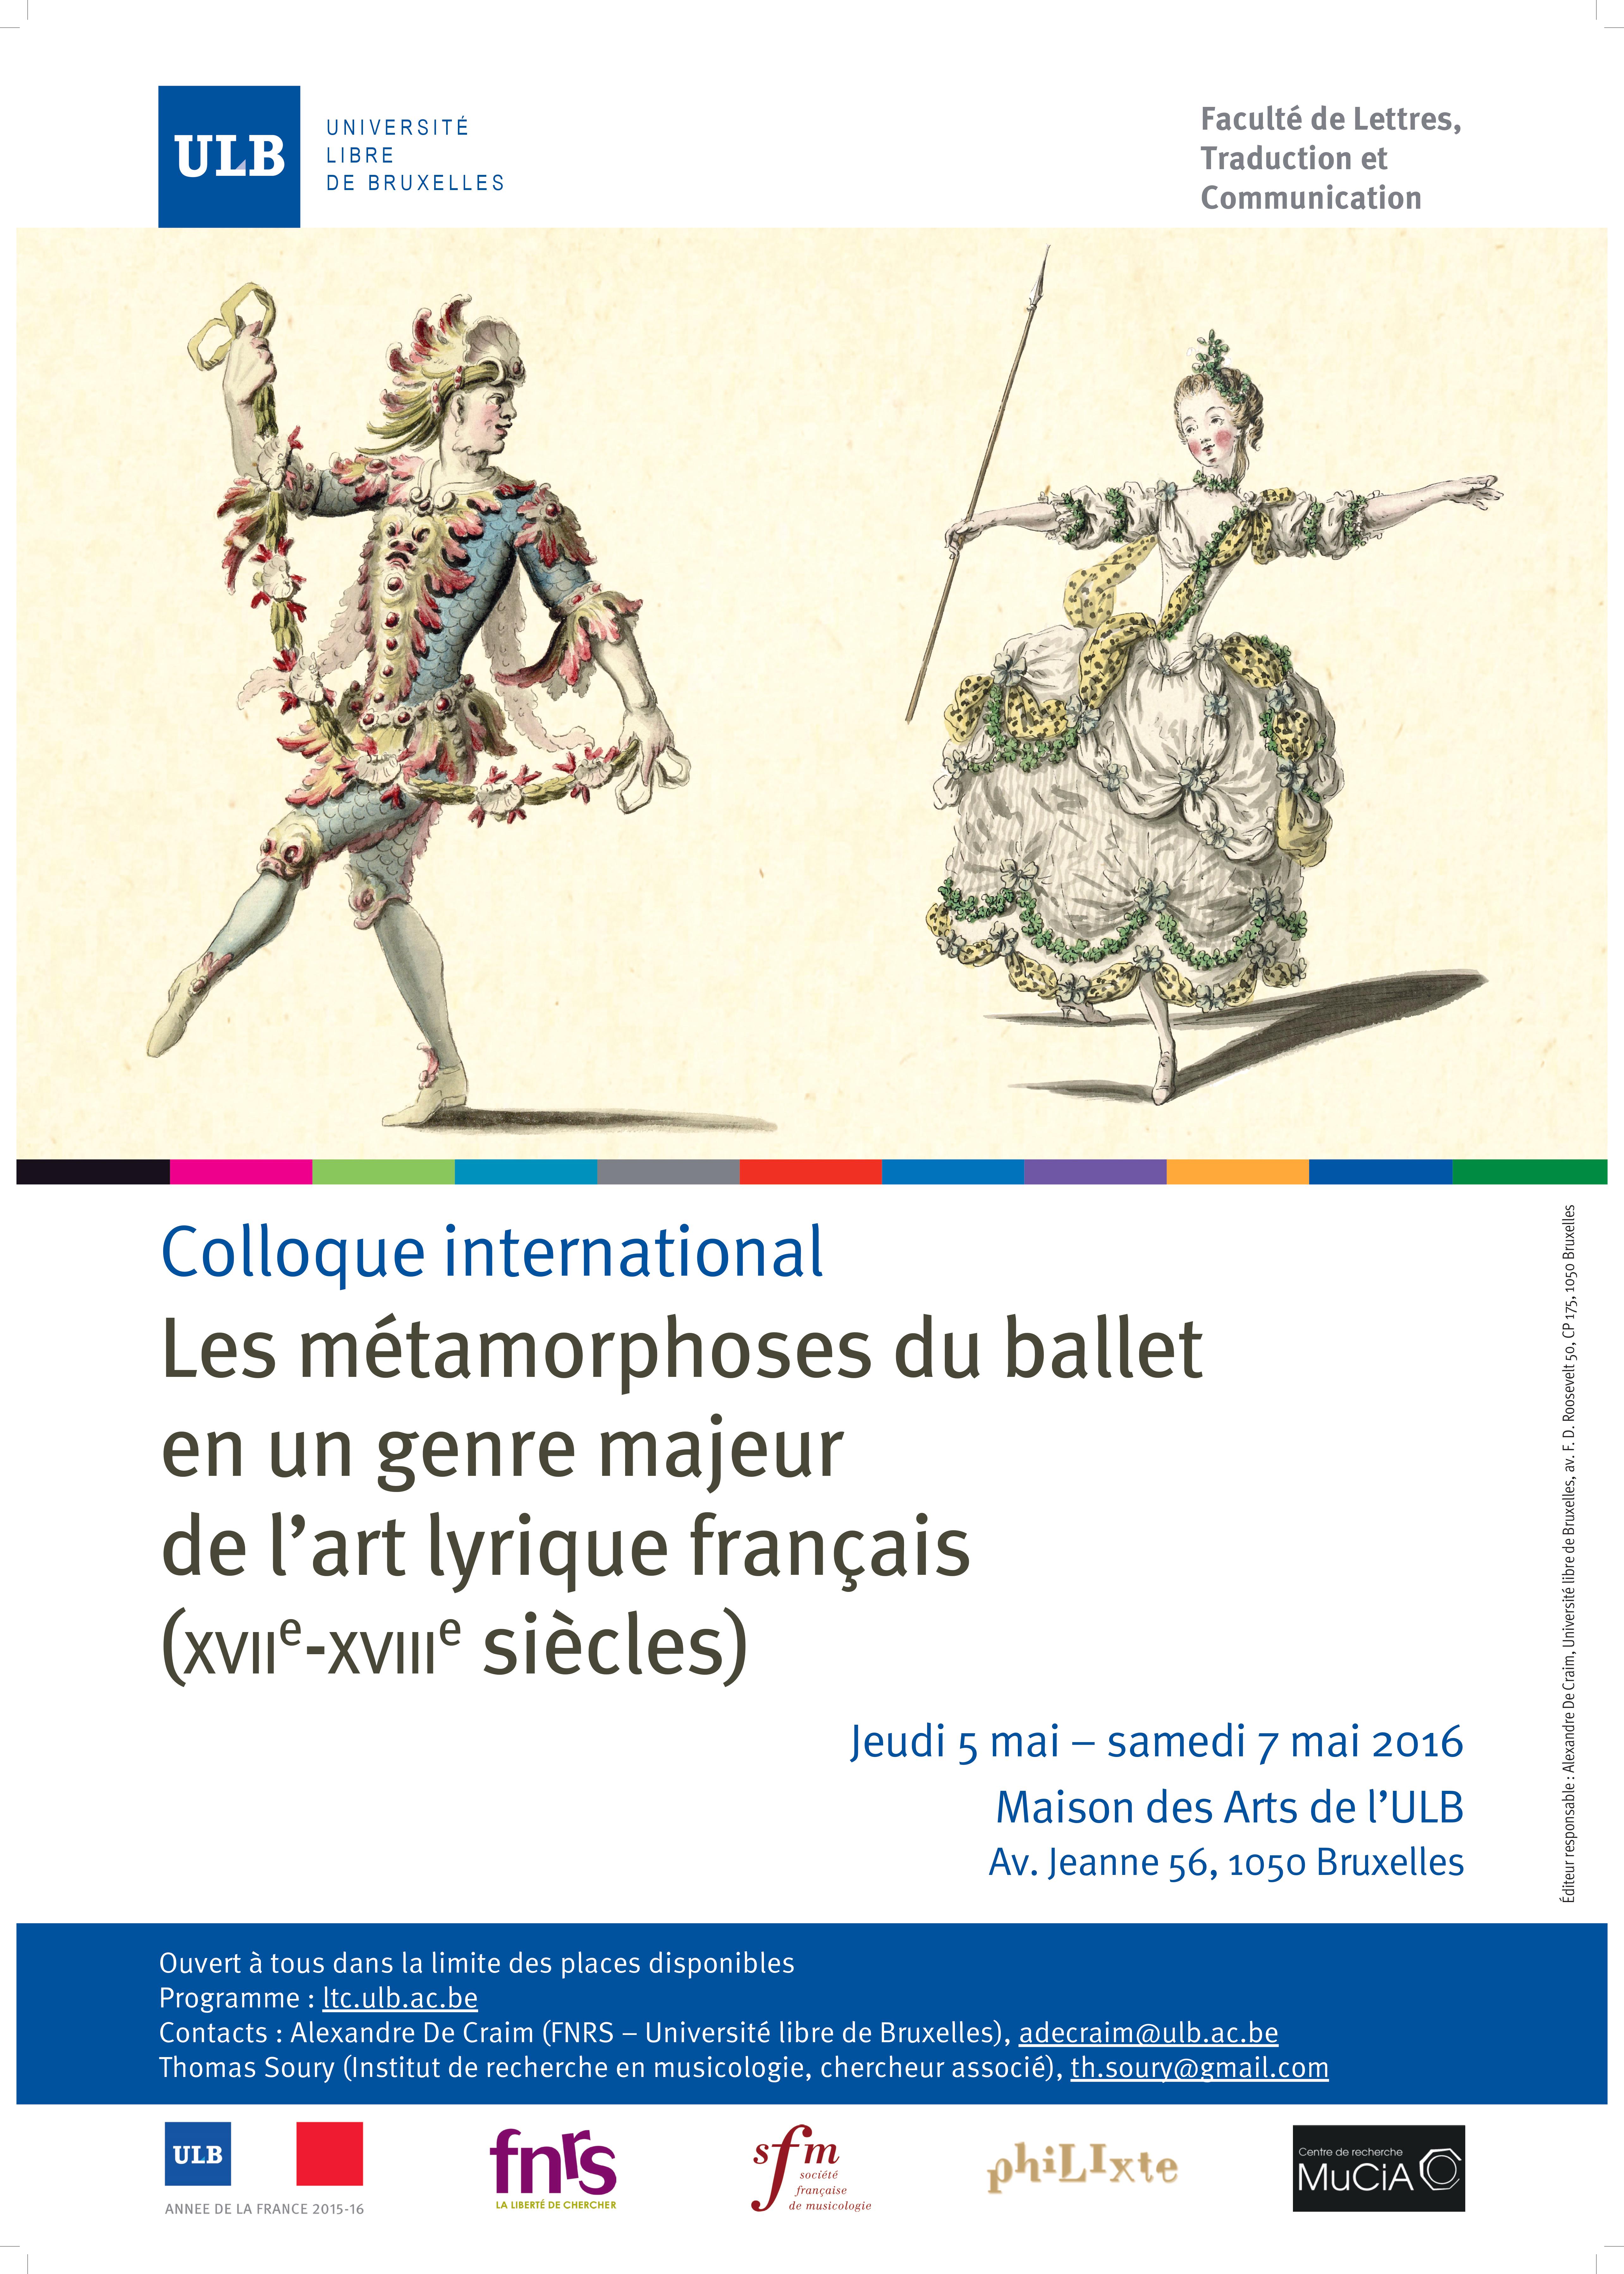 2016 - Les métamorphoses du ballet en un genre majeur de l'art lyrique français (XVIIe-XVIIIe siècles)